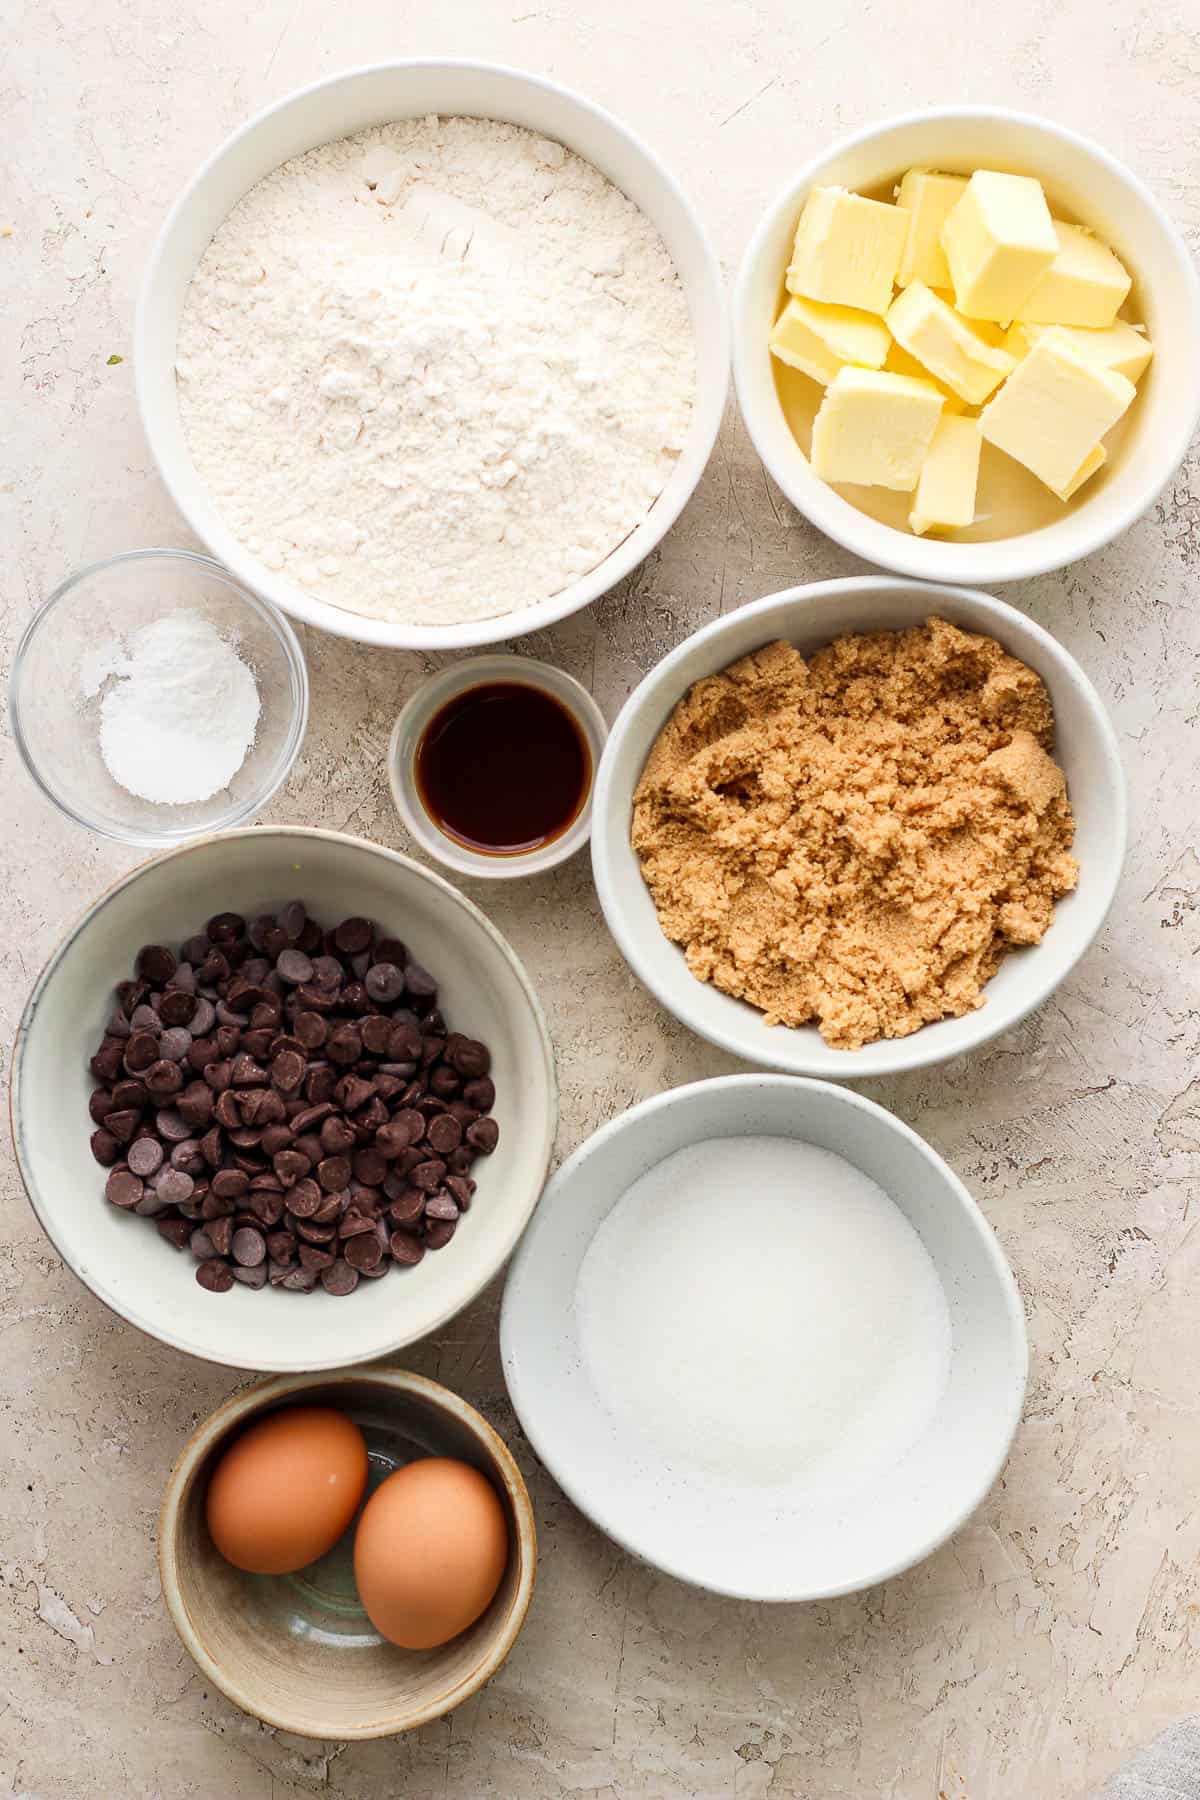 Cookie skillet ingredients in separate bowls.